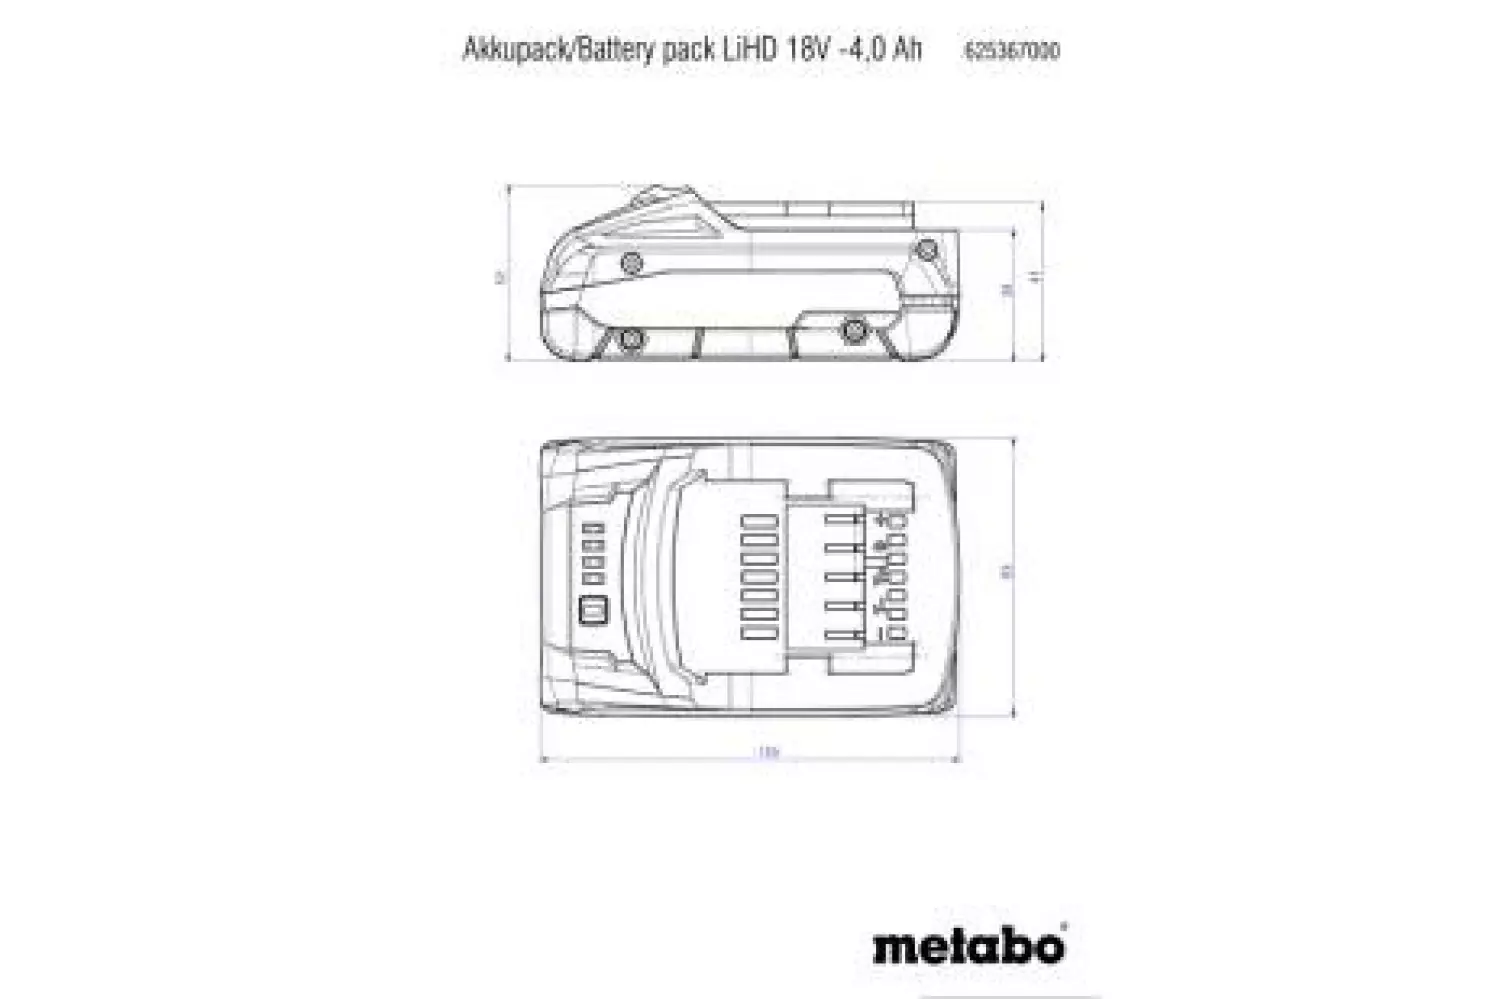 Metabo 625367000 LiHD accu-pack 18 V - 4.0 Ah-image